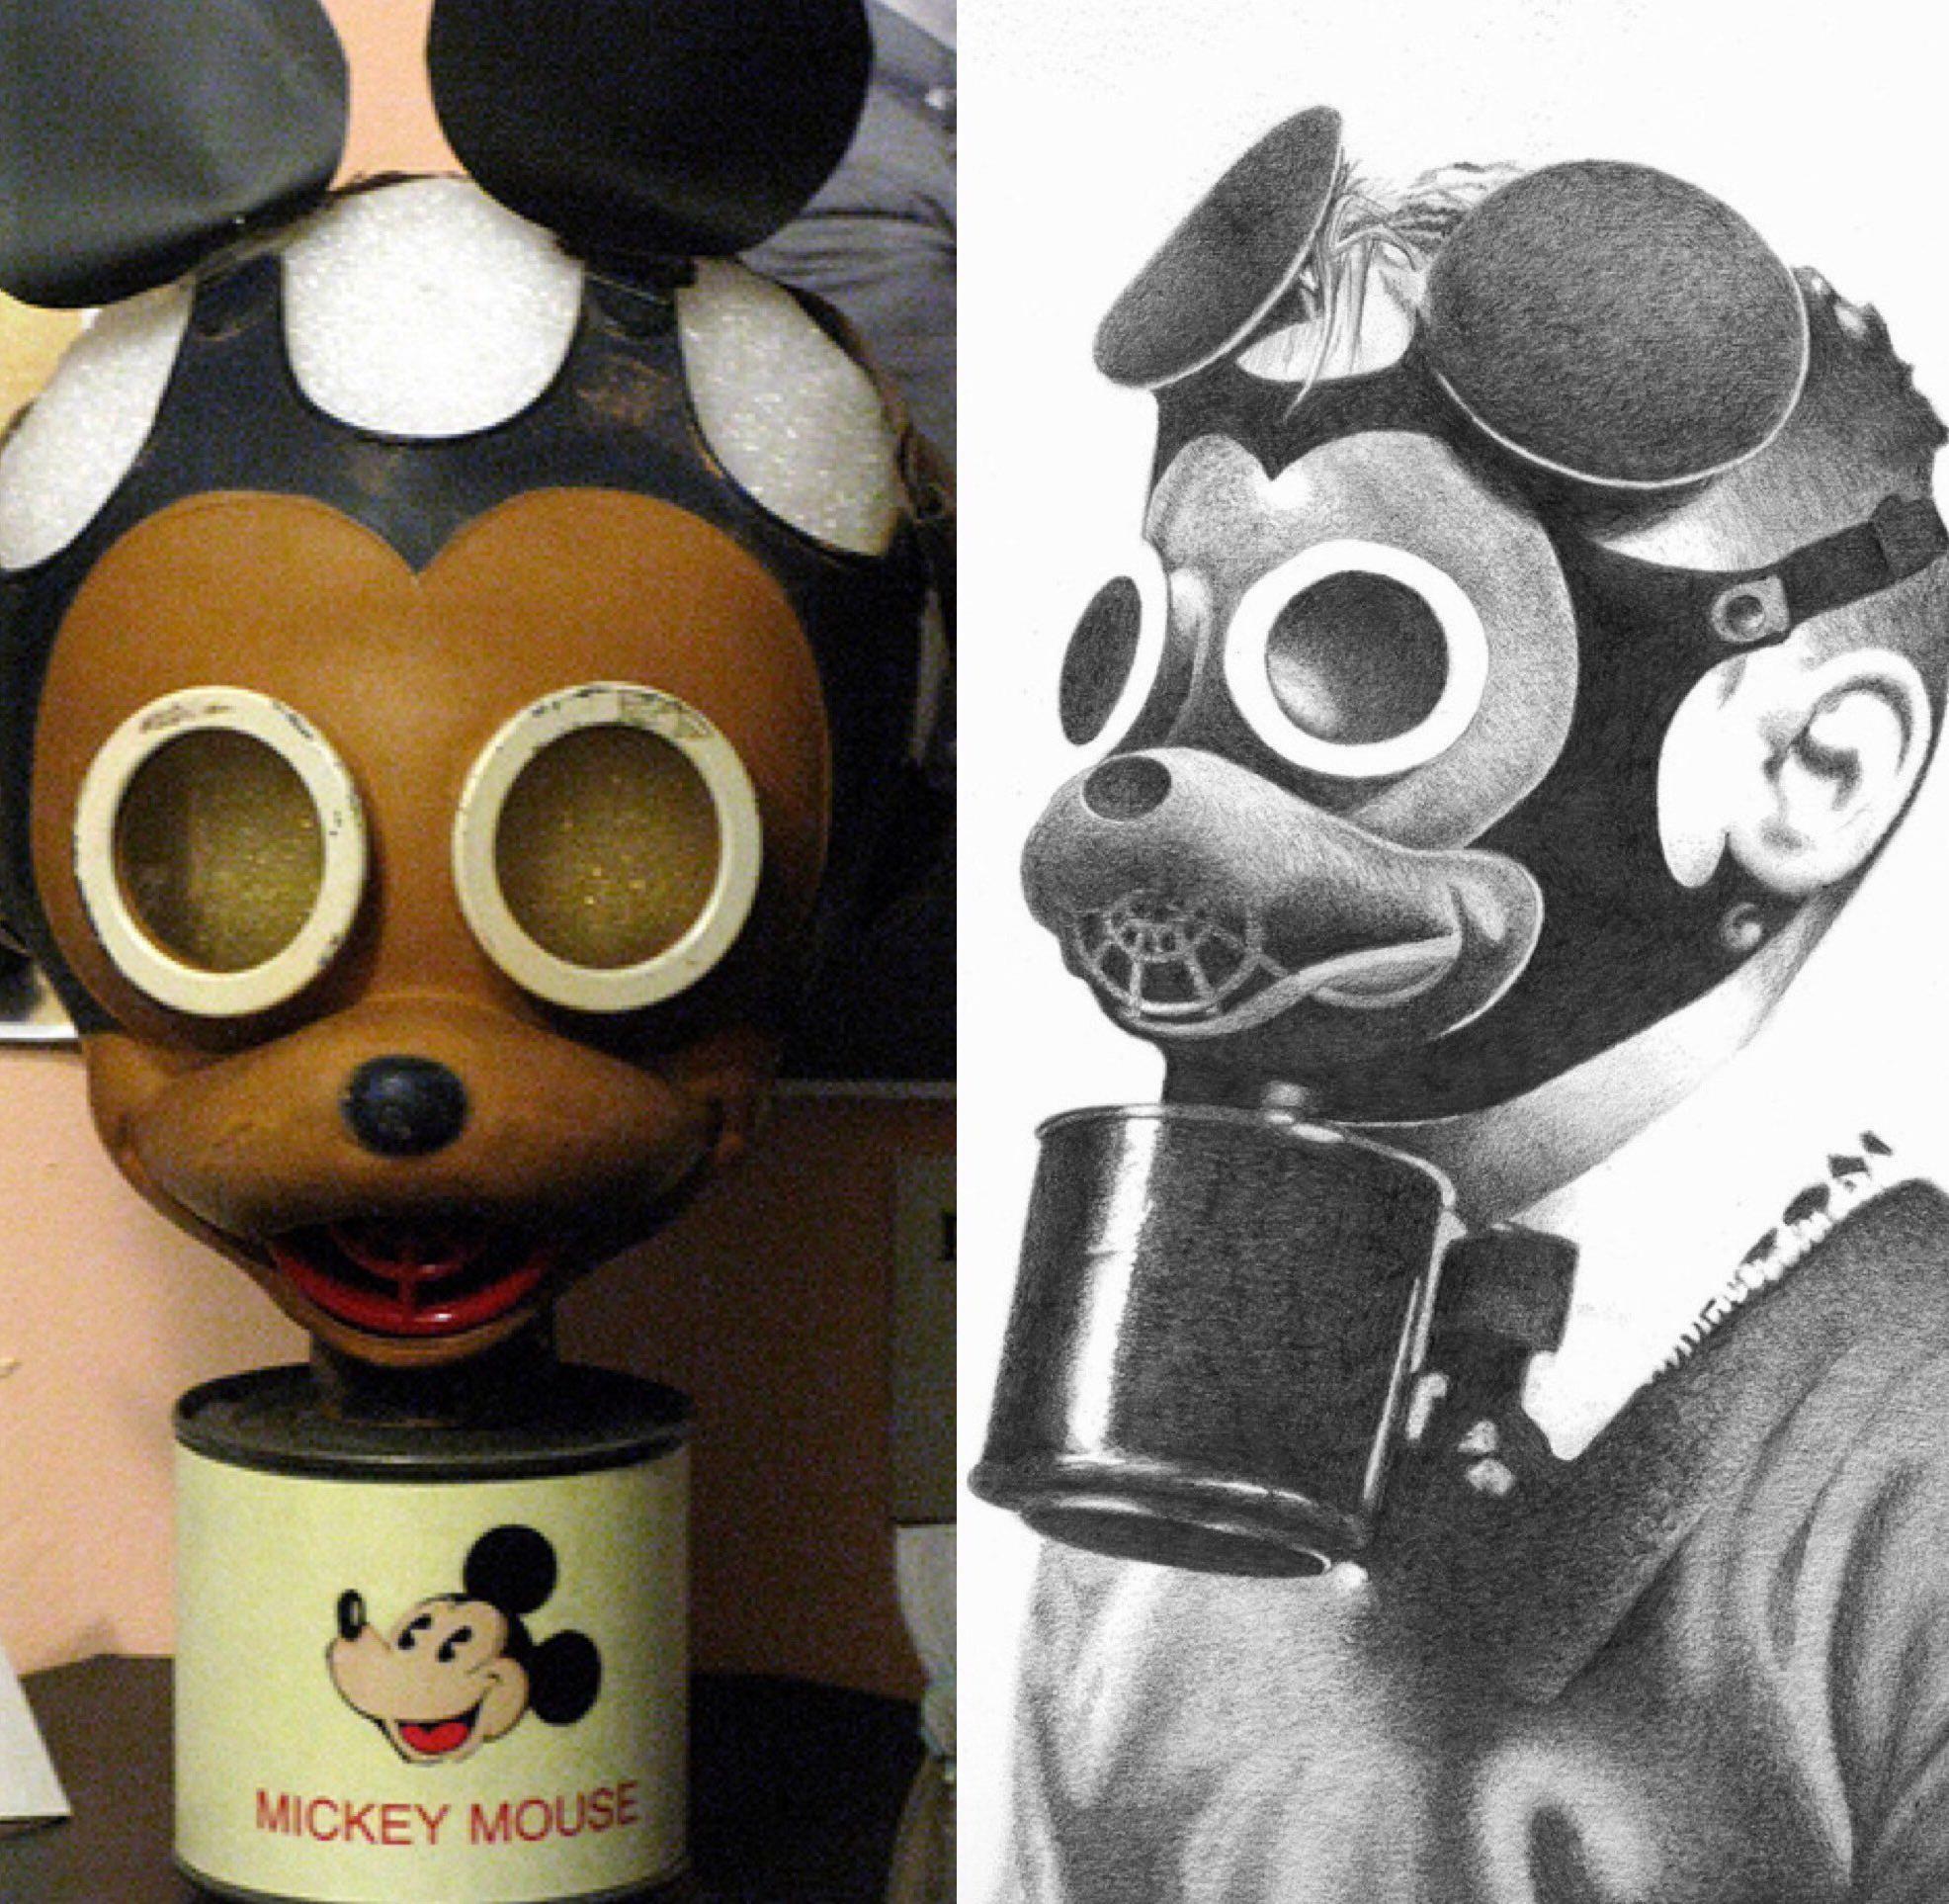 masque à gaz mickey mouse de la wwii, en essayant de rendre le masque moins effrayant pour les enfants